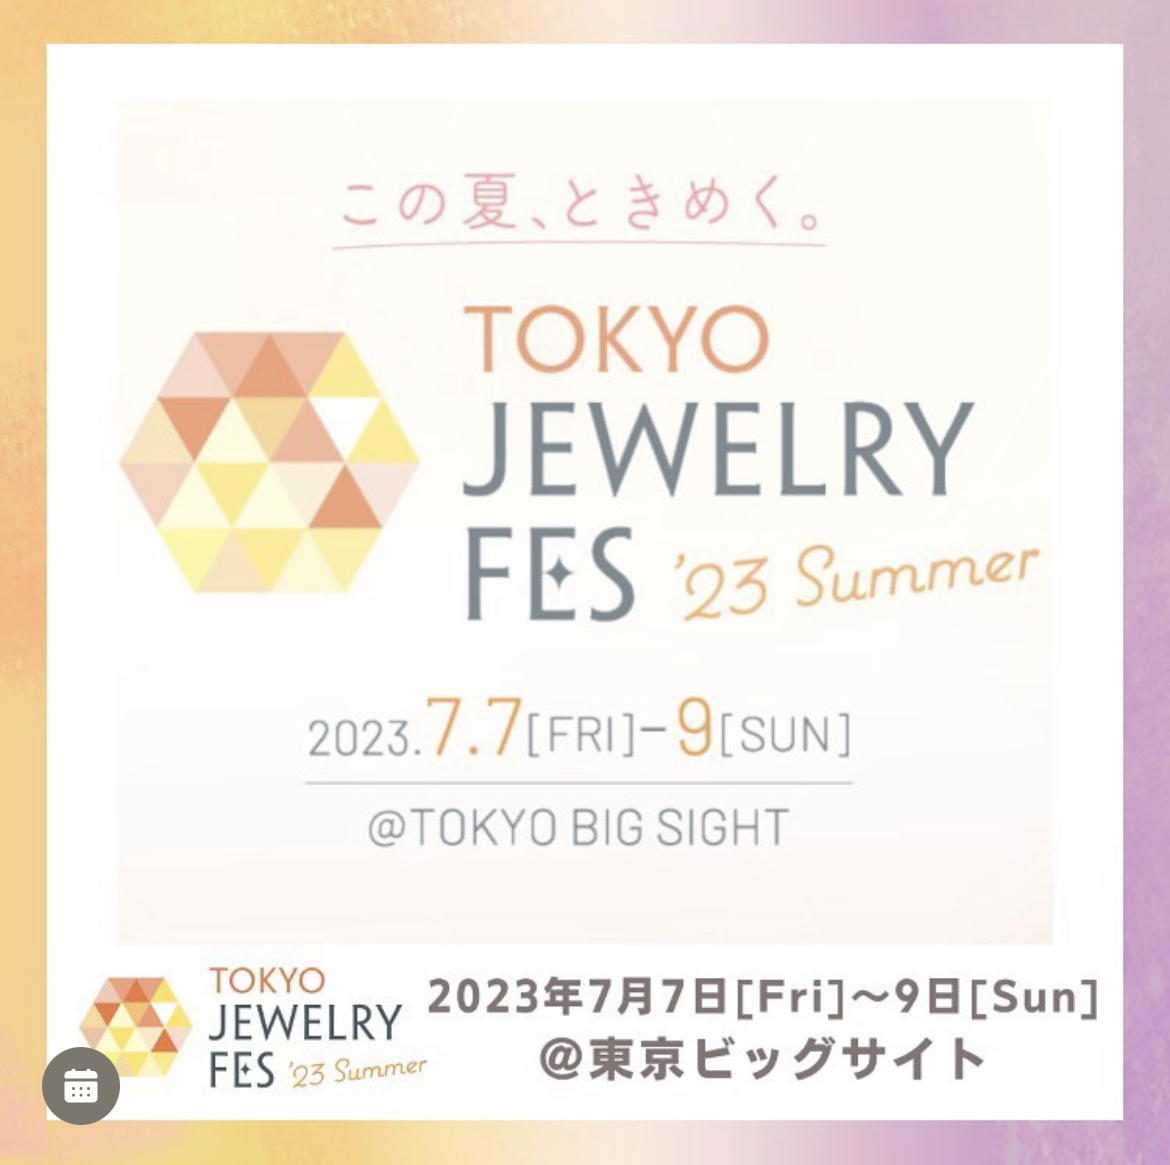 【出展】TOKYO JEWELRY FES SUMMER